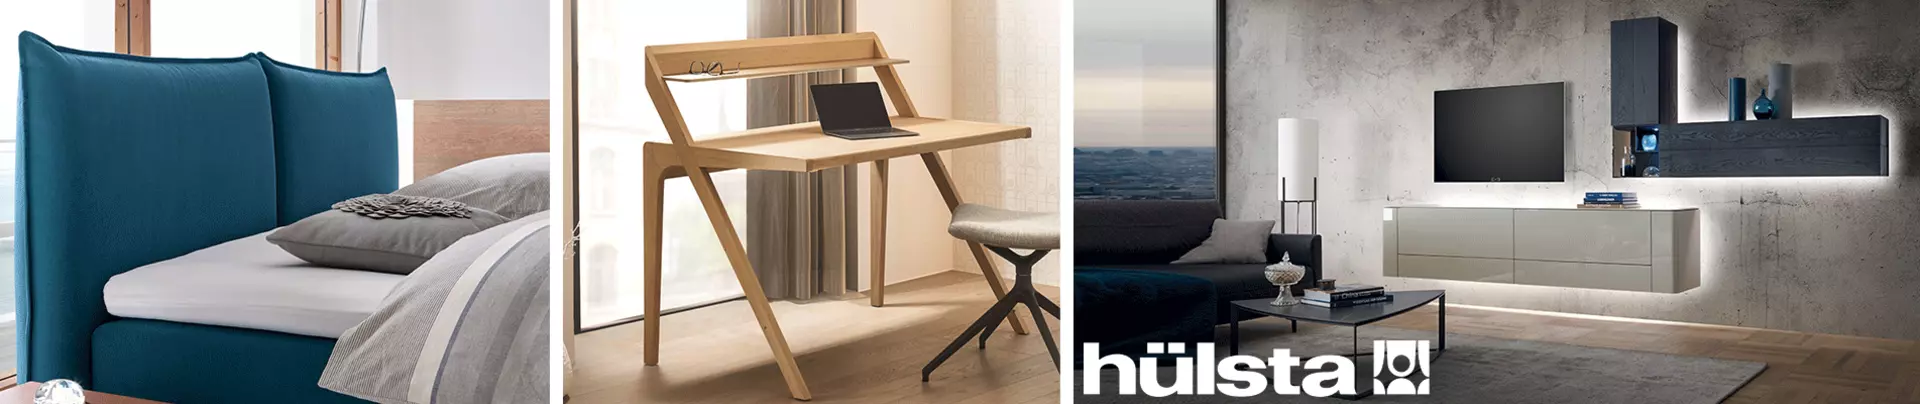 Hülsta - die Premium-Marke für exklusive Möbel mit Stil bei Möbel Inhofer